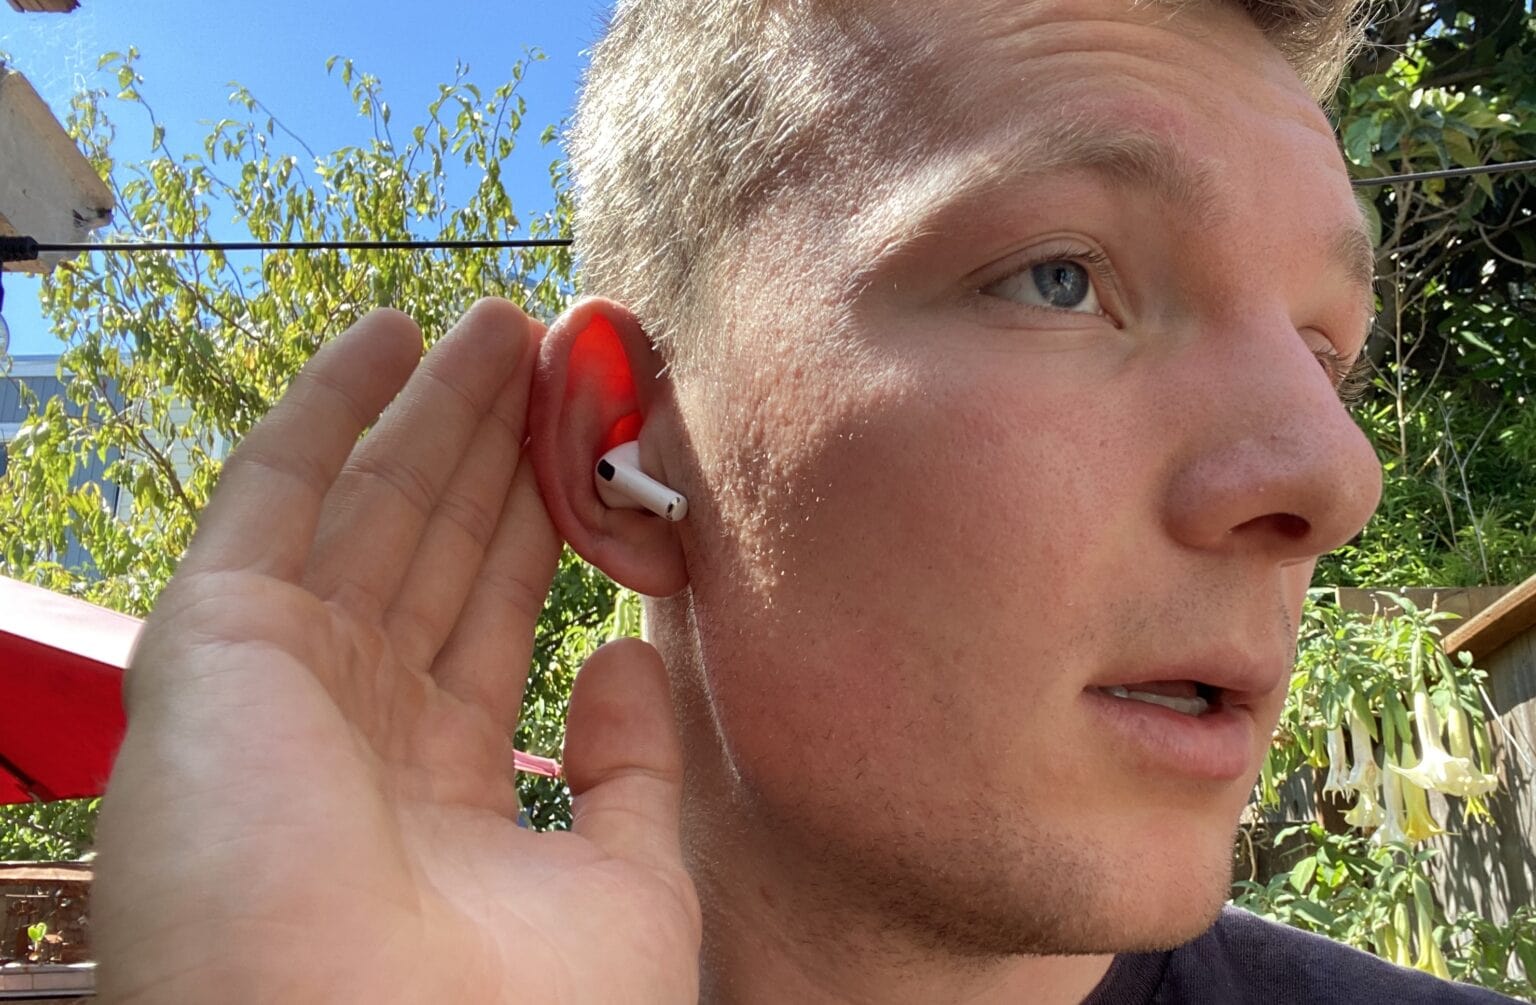 Z iPhoneIslam.com Młody mężczyzna wkłada do ucha czerwone słuchawki AirPods 4 na słonecznym tle z zielonymi liśćmi.